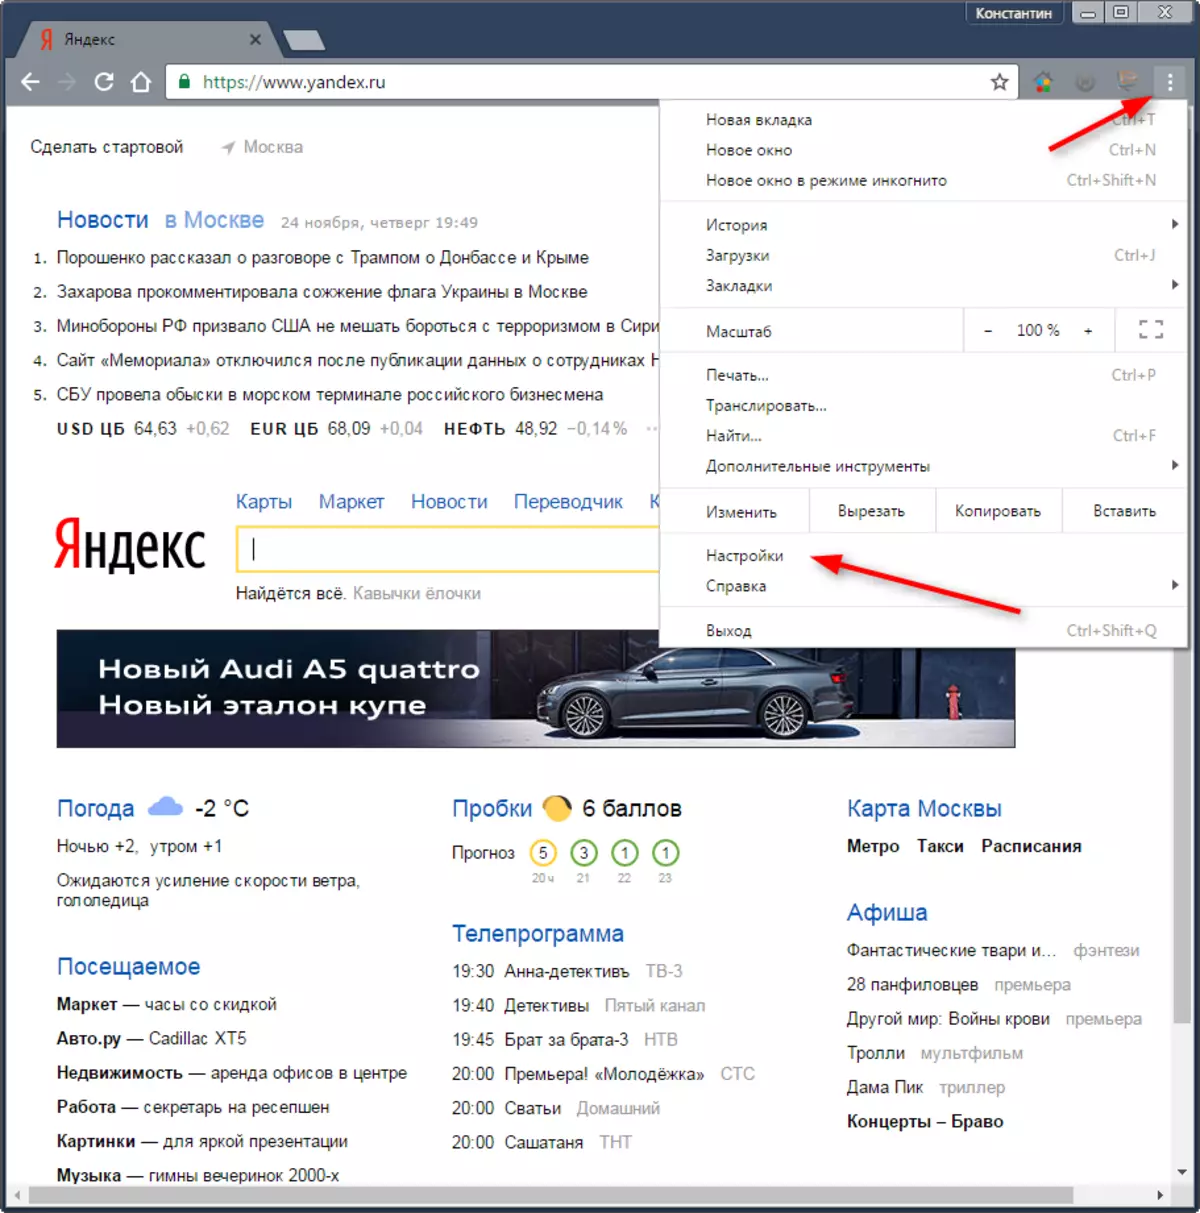 Wat te dwaan as Yandex-kaarten net 1 wurkje